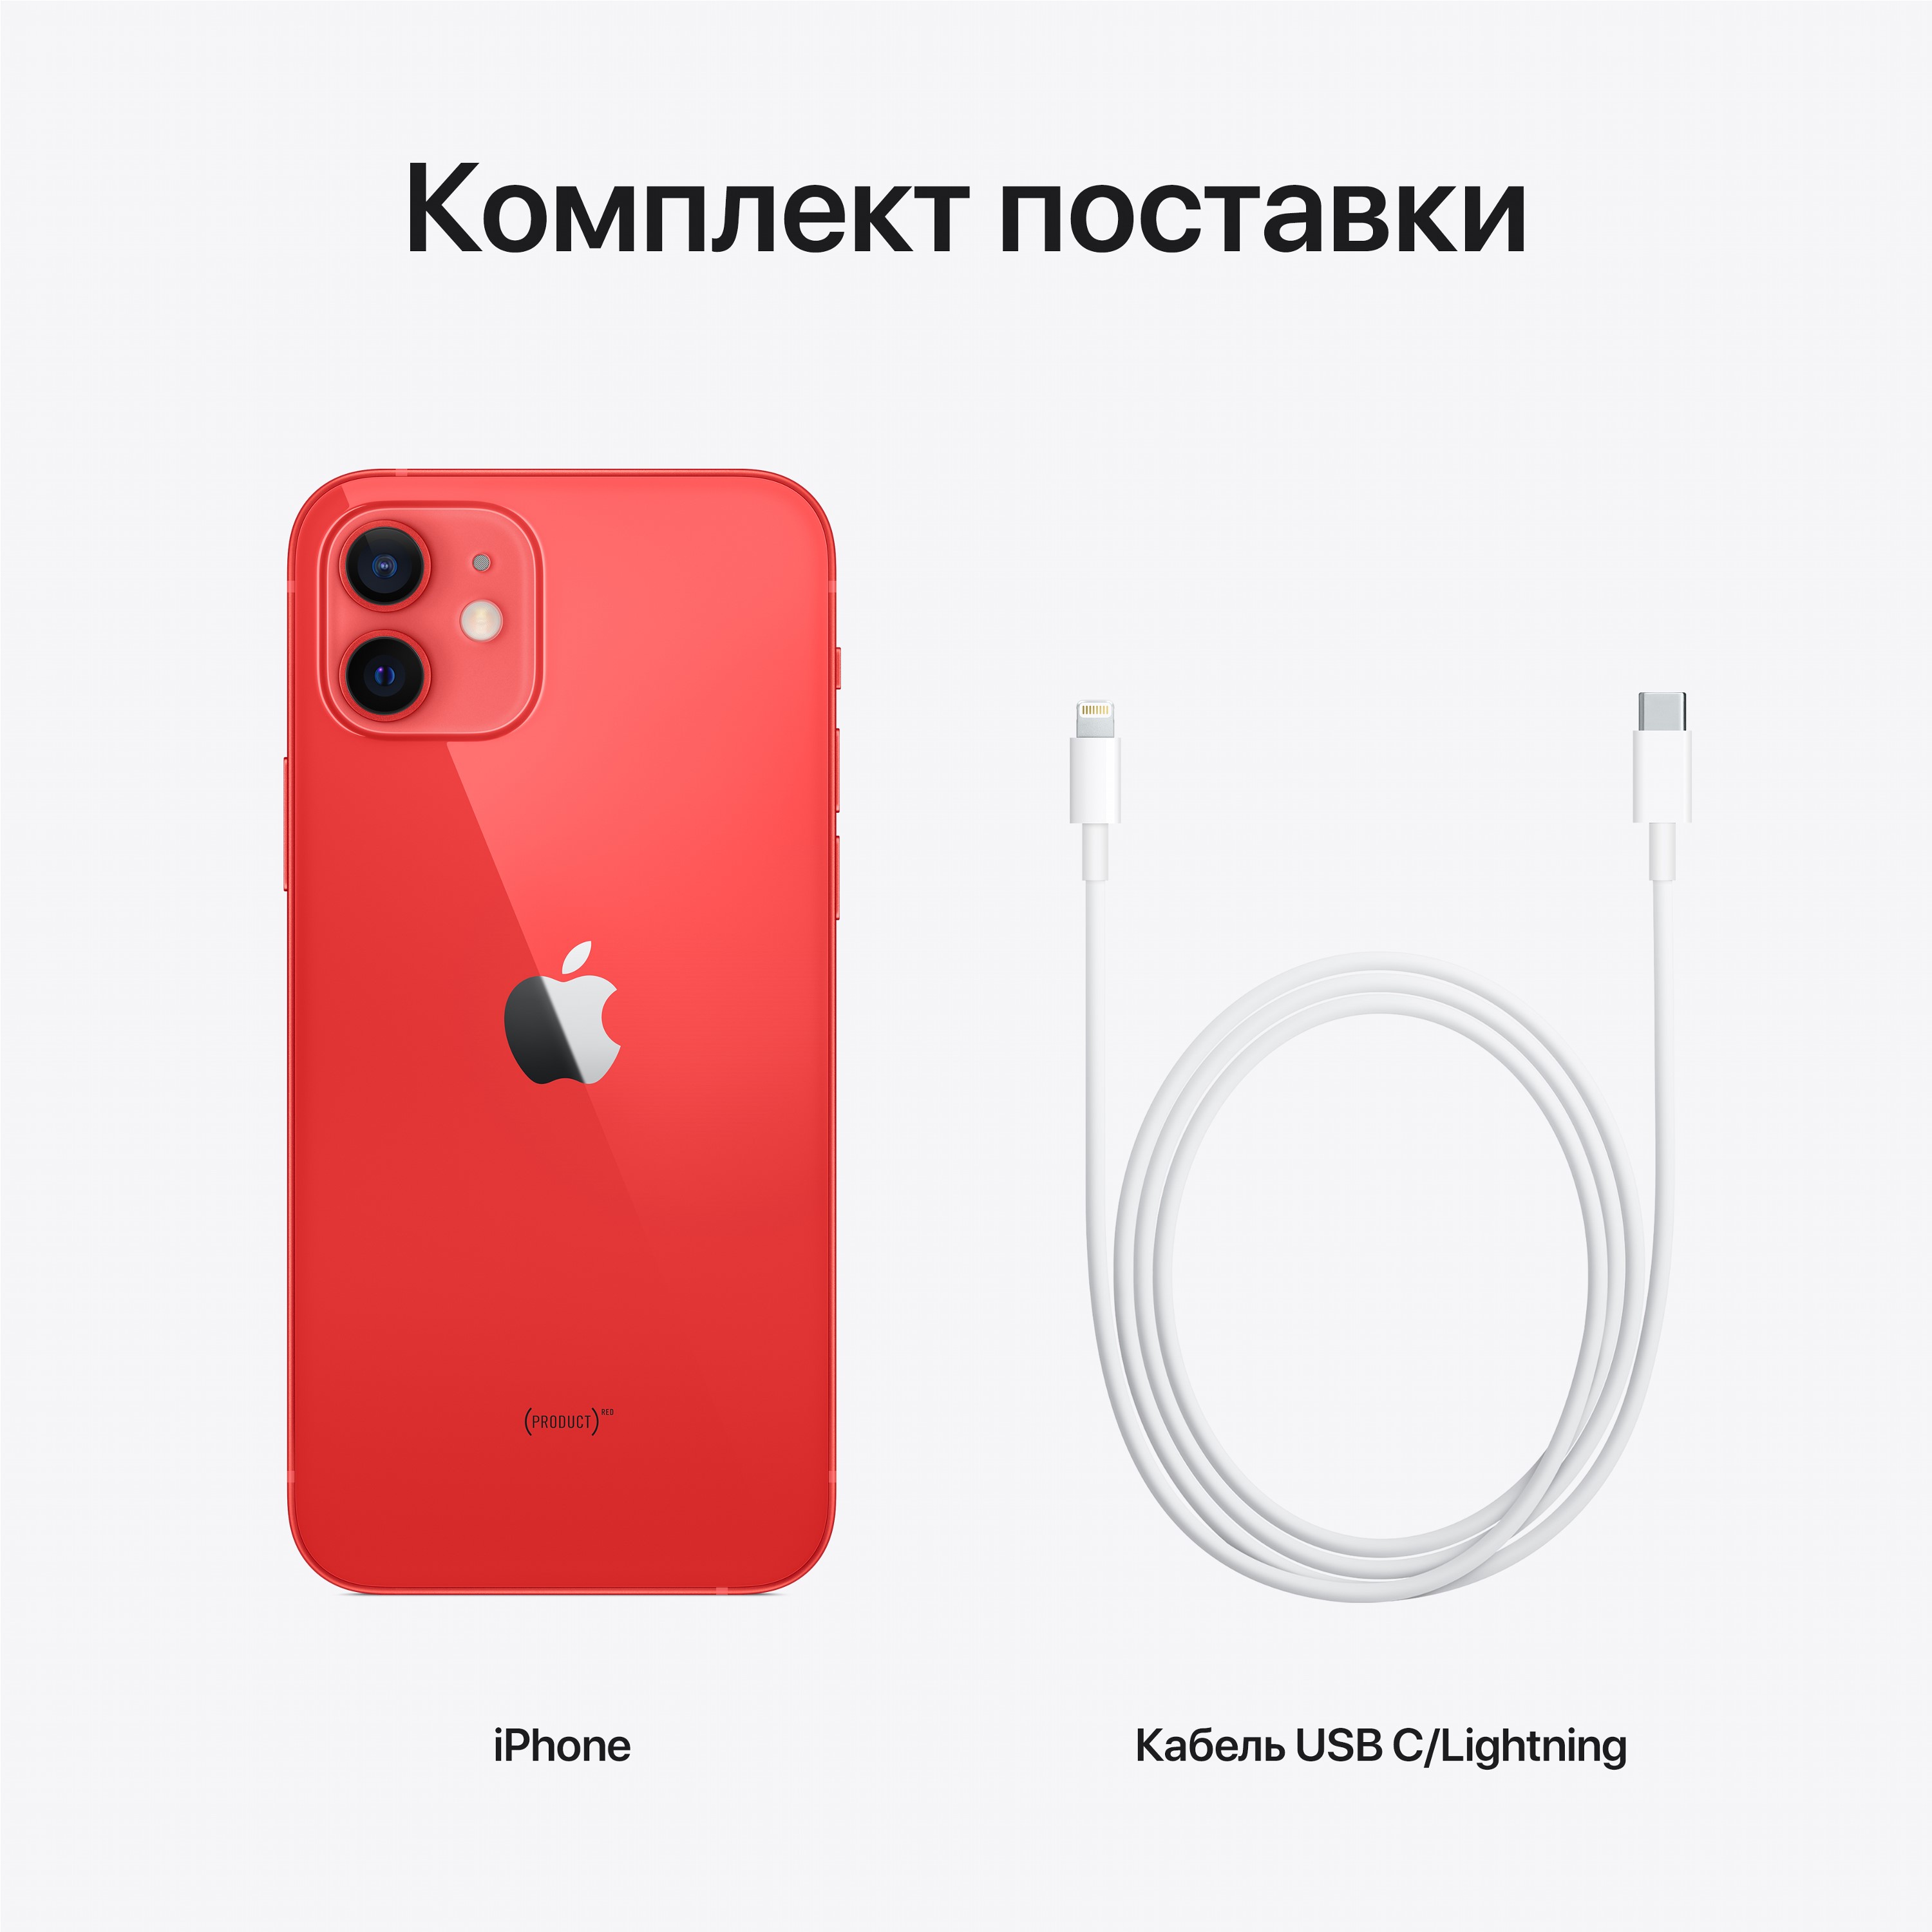 iPhone 12 - ROZETKA | Купить Айфон 12 в Украине